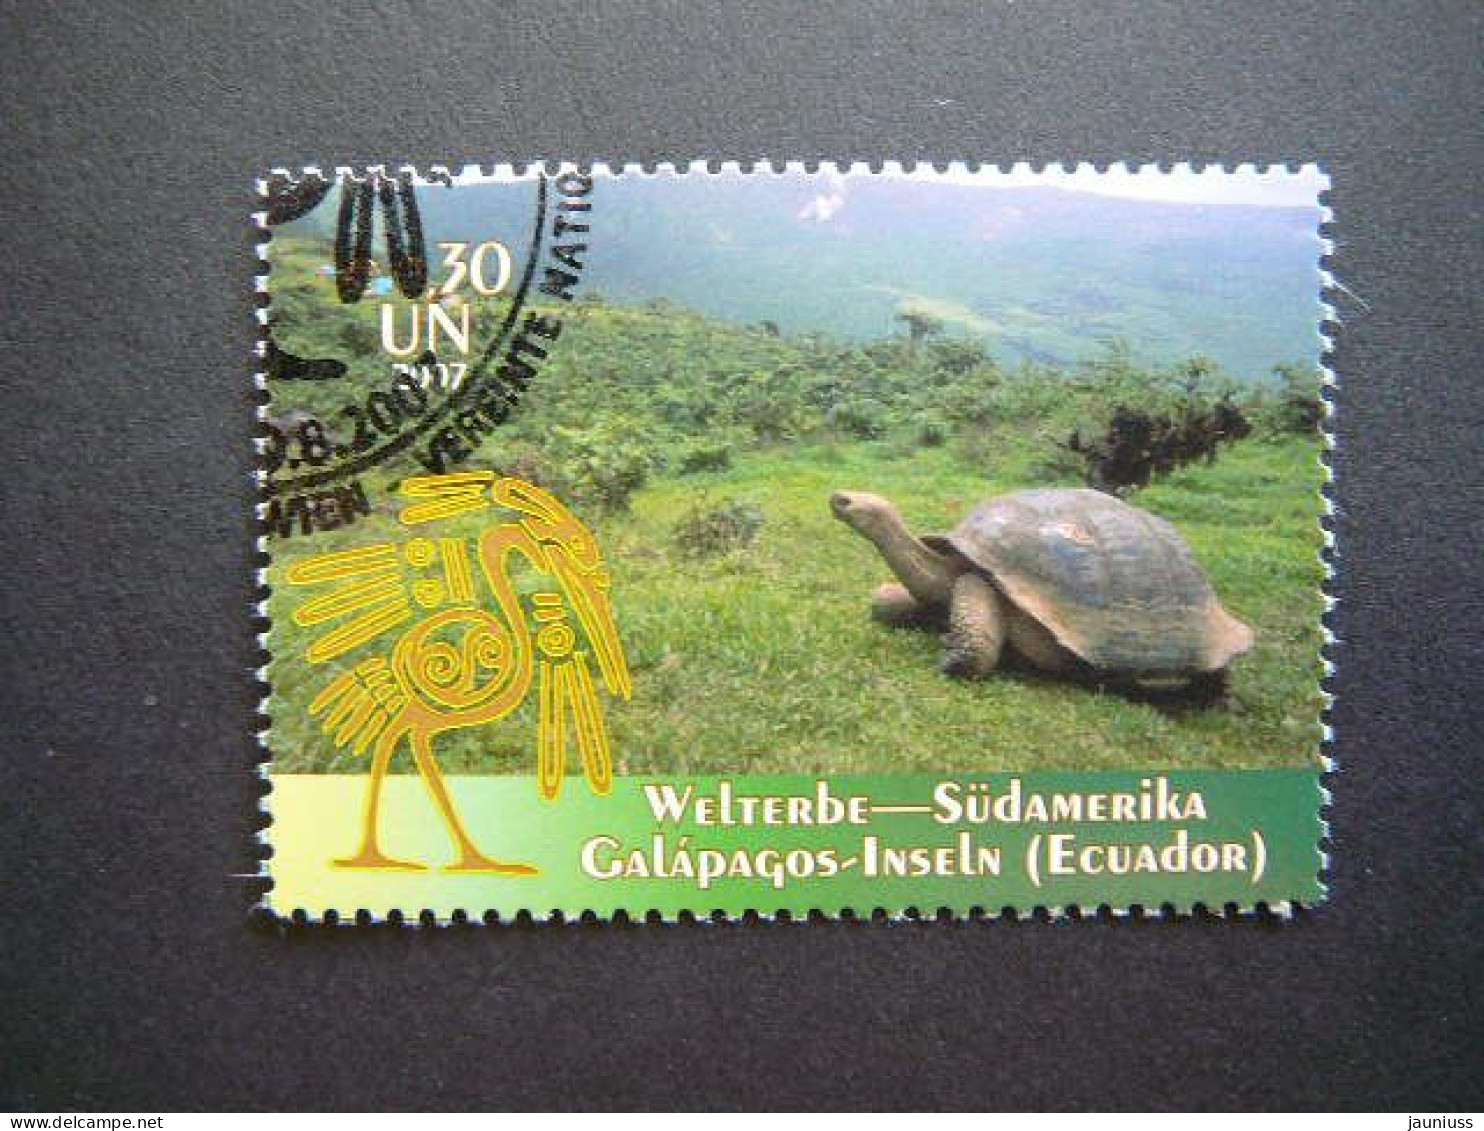 World Heritage Sites # United Nations UN Vienna 2007 Used #Mi.511 Galapagos Turtles - Usati